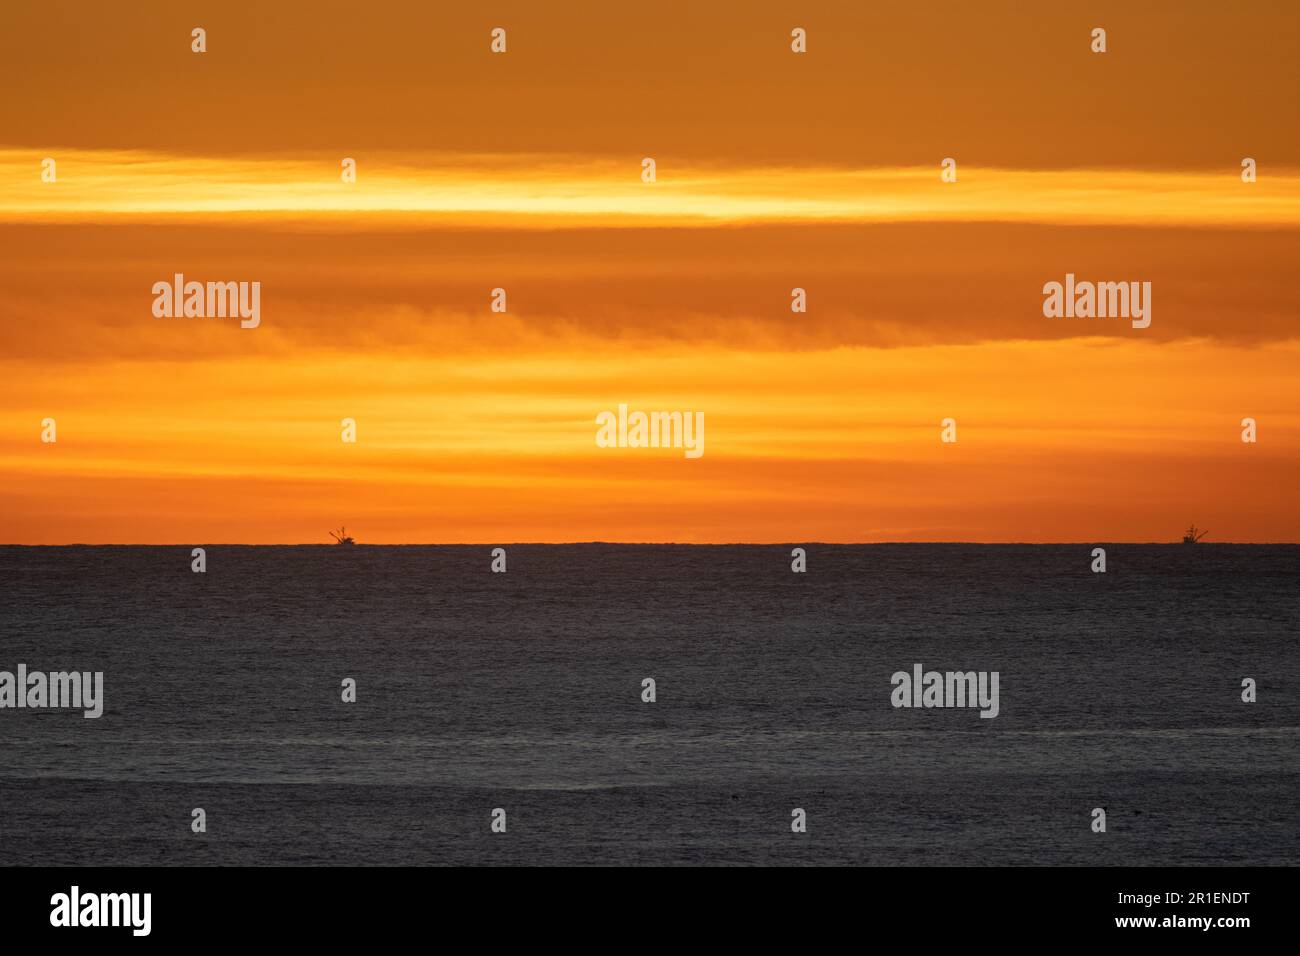 Atardecer cielo naranja sobre el Océano Pacífico, con dos pequeños barcos de pesca en el horizonte Foto de stock